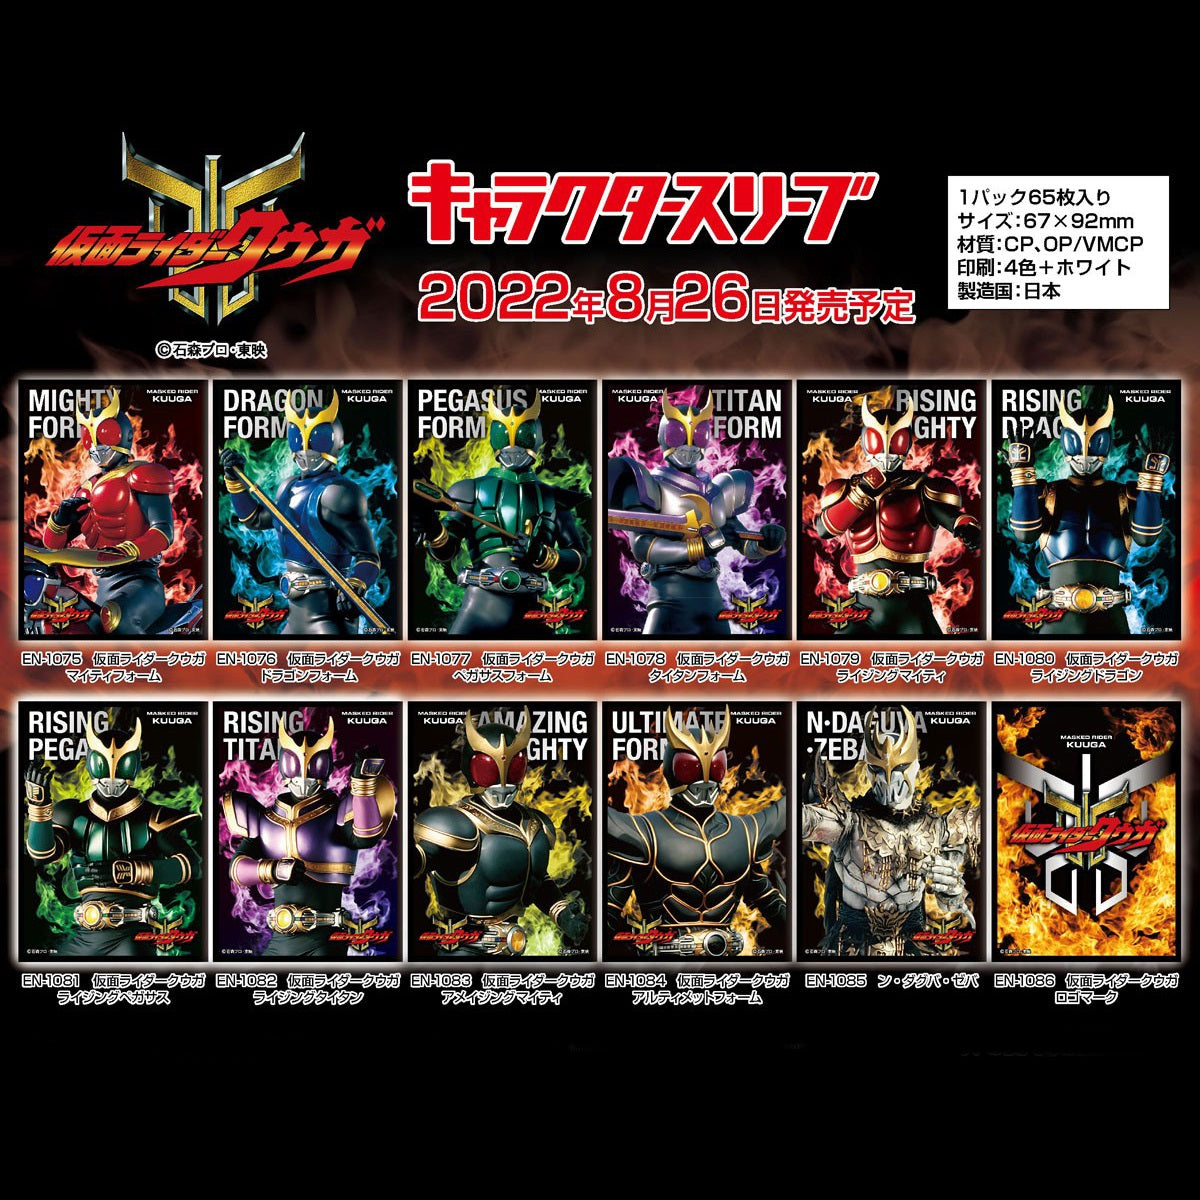 Kamen Rider Kuuga Character Sleeve Collection [EN-1078] "Titan Form"-Ensky-Ace Cards & Collectibles